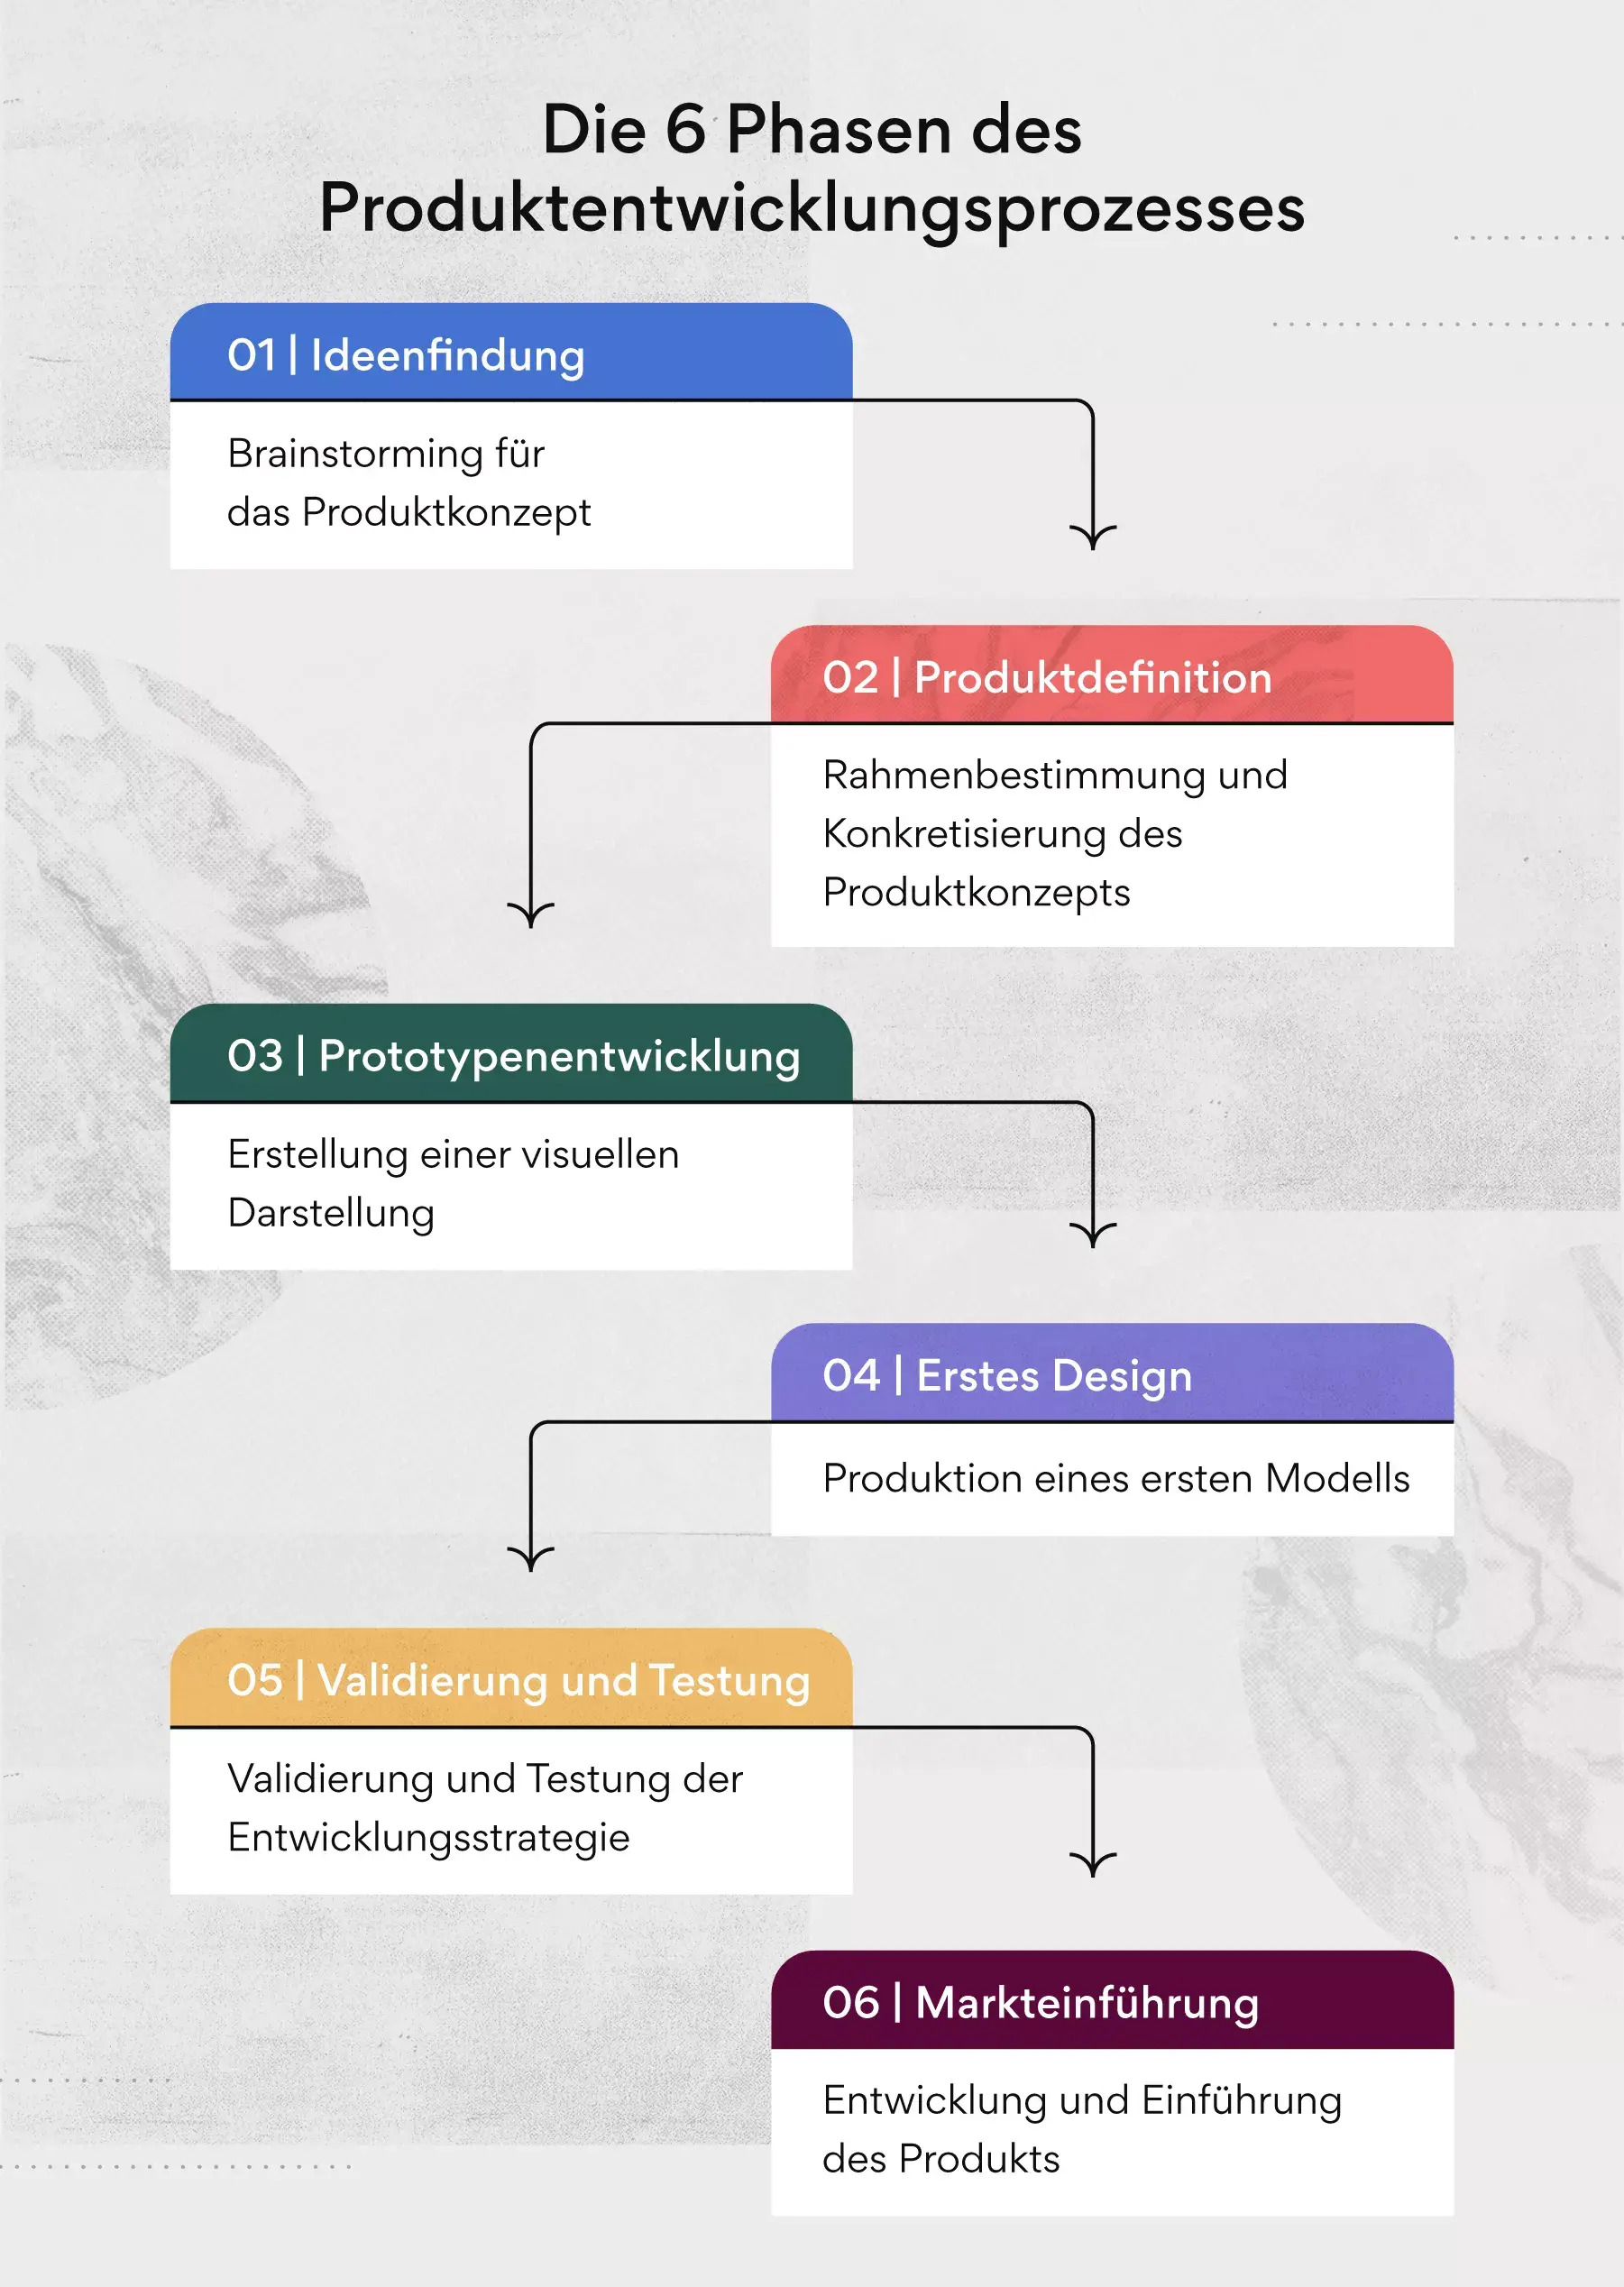 Die sechs Phasen des Produktentwicklungsprozesses